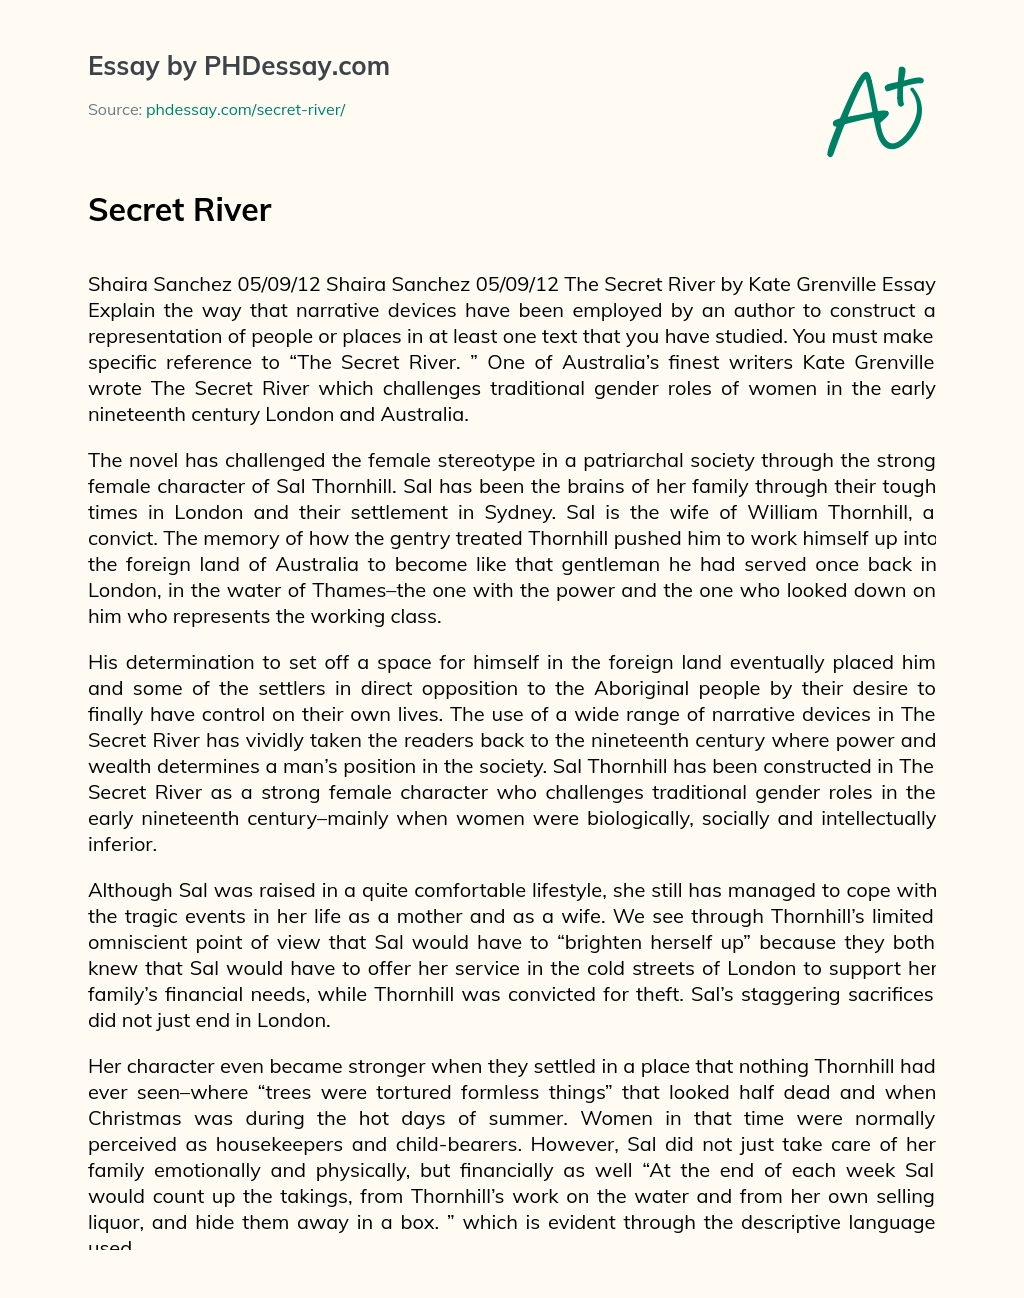 Secret River essay